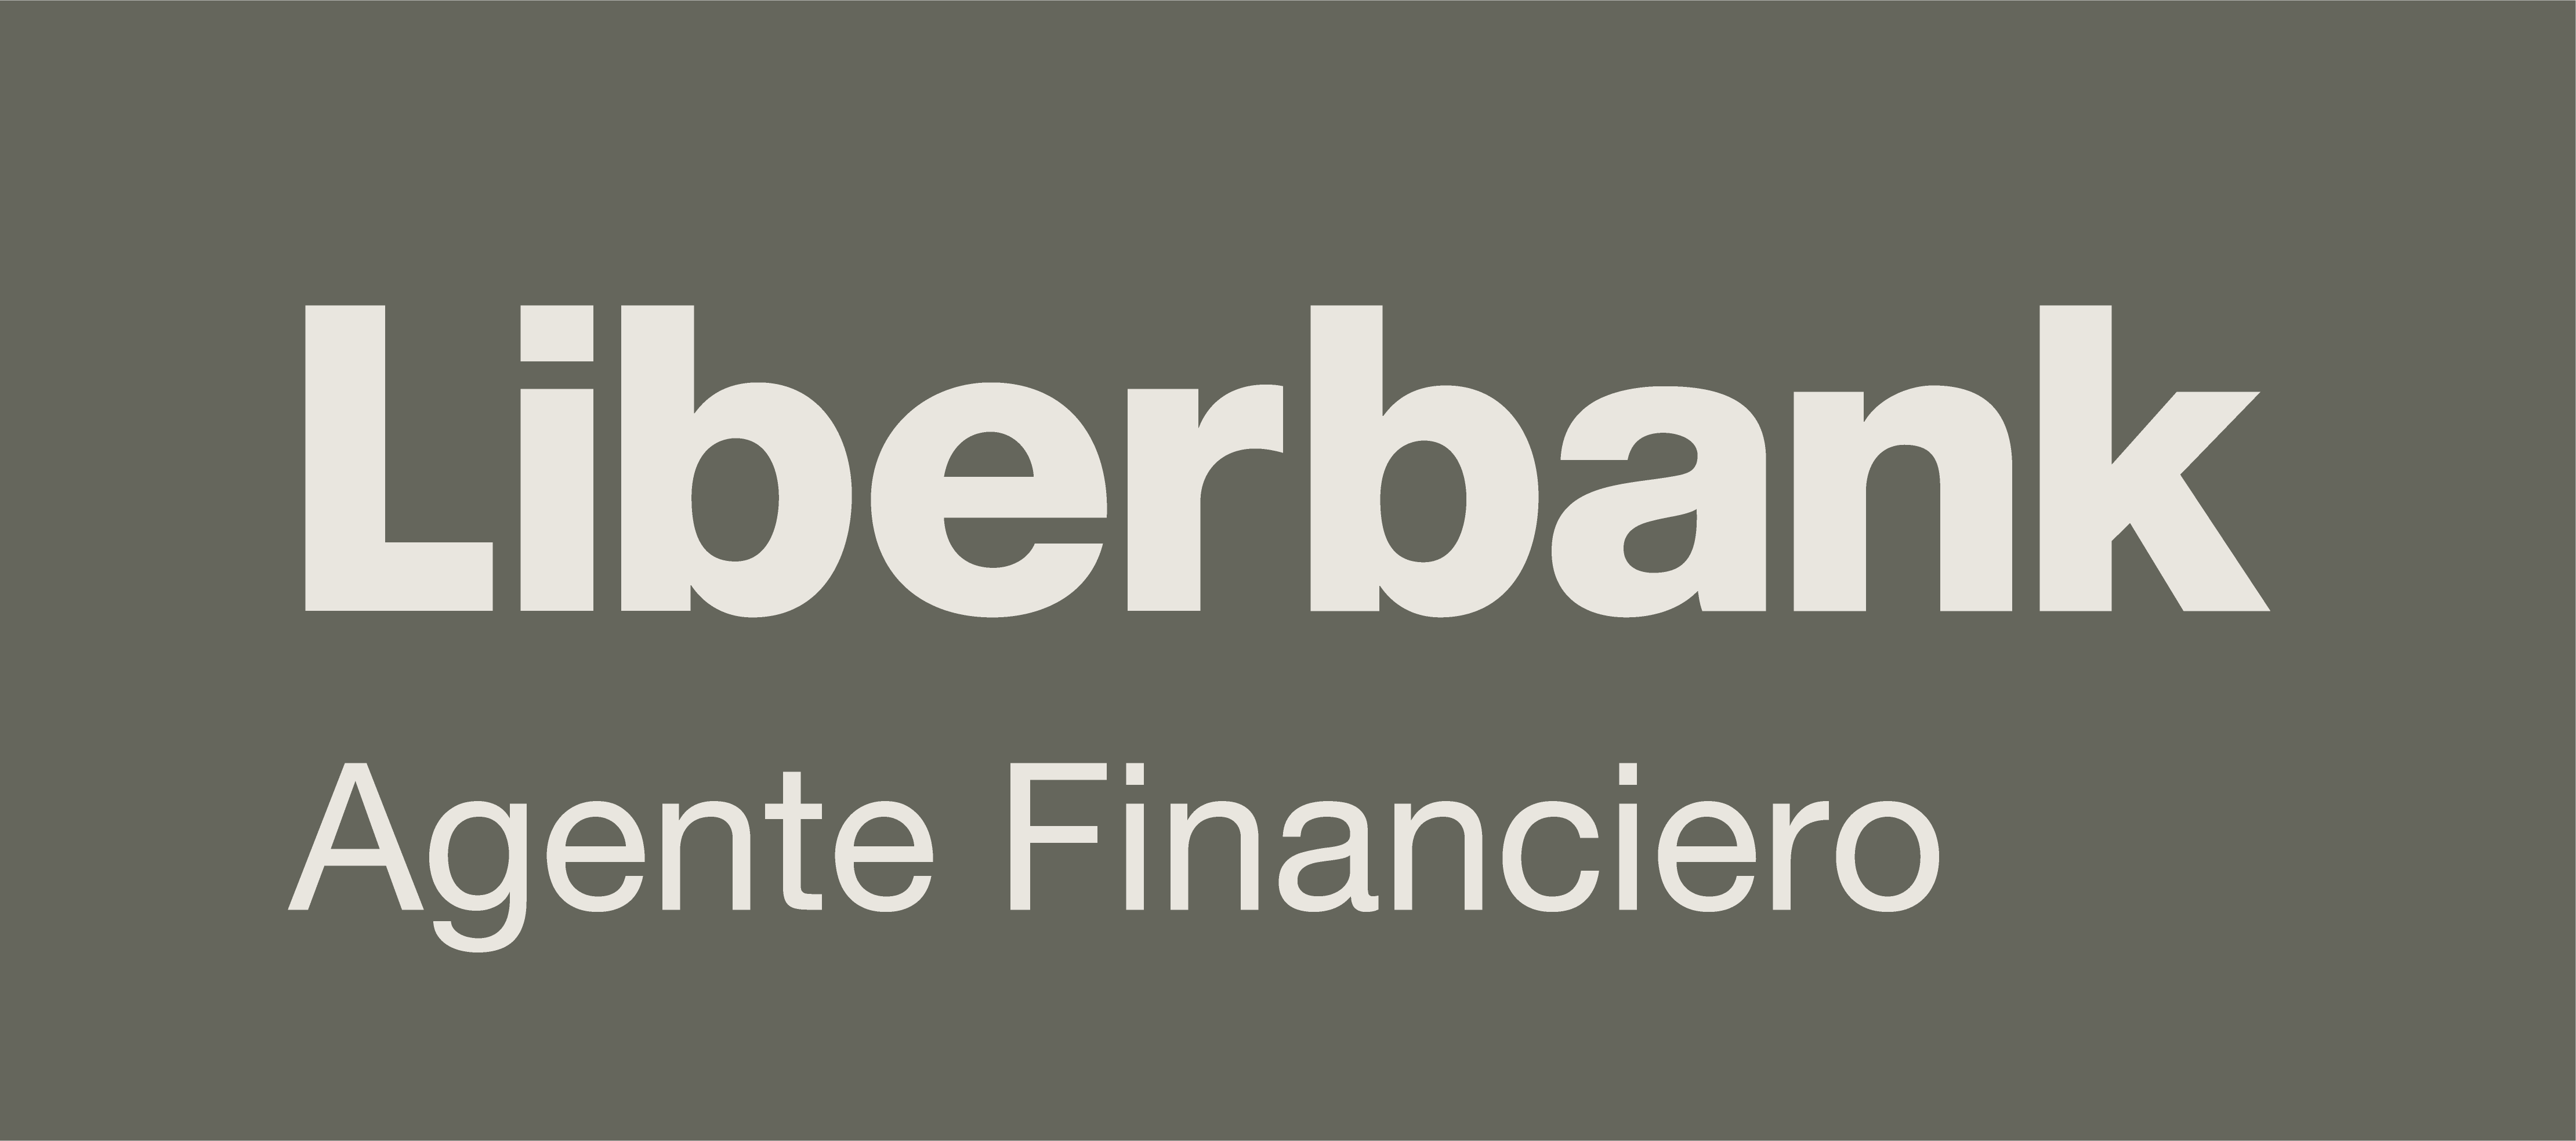 lbk agentefinanciero rgb 03 - Nogues&Soriano